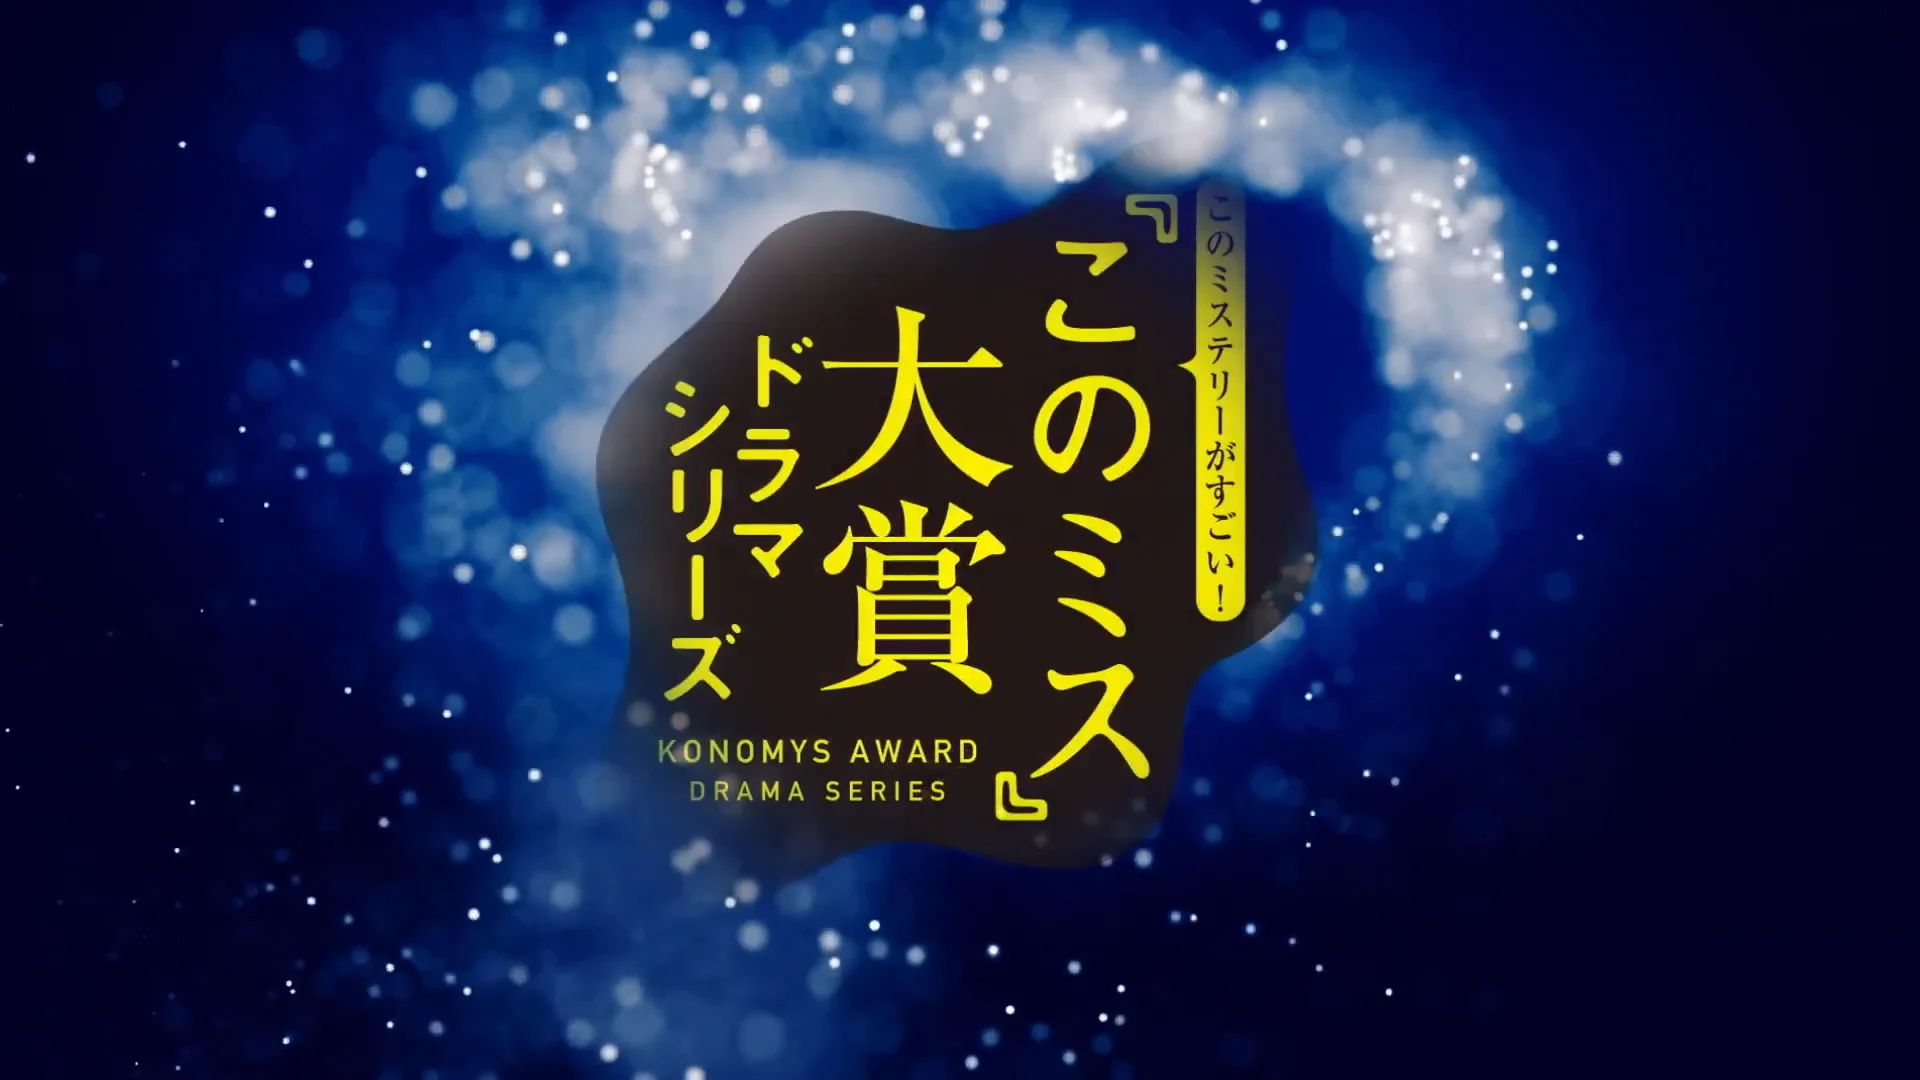 Watashi-ni-Tenshi-ga-Maiorita!-Episode-2 on Vimeo